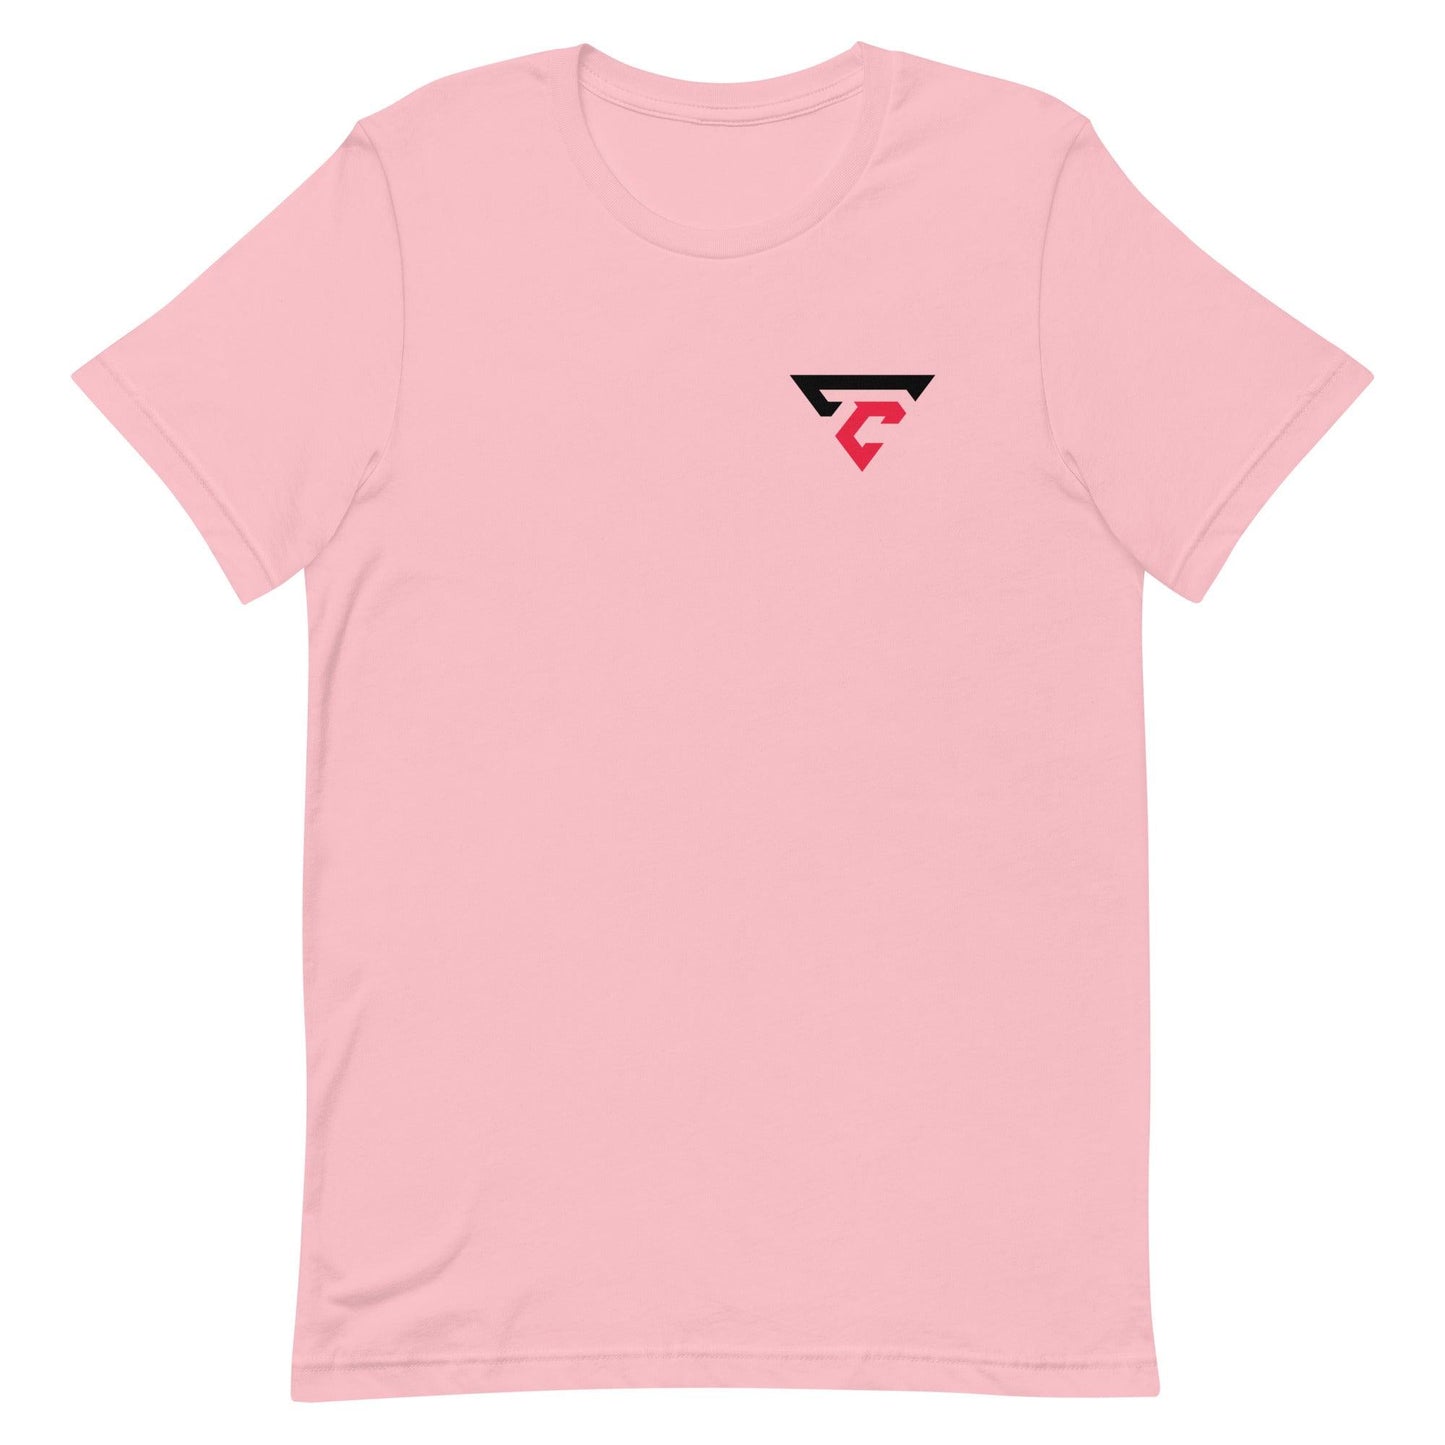 Trevor Carter "Essential" t-shirt - Fan Arch